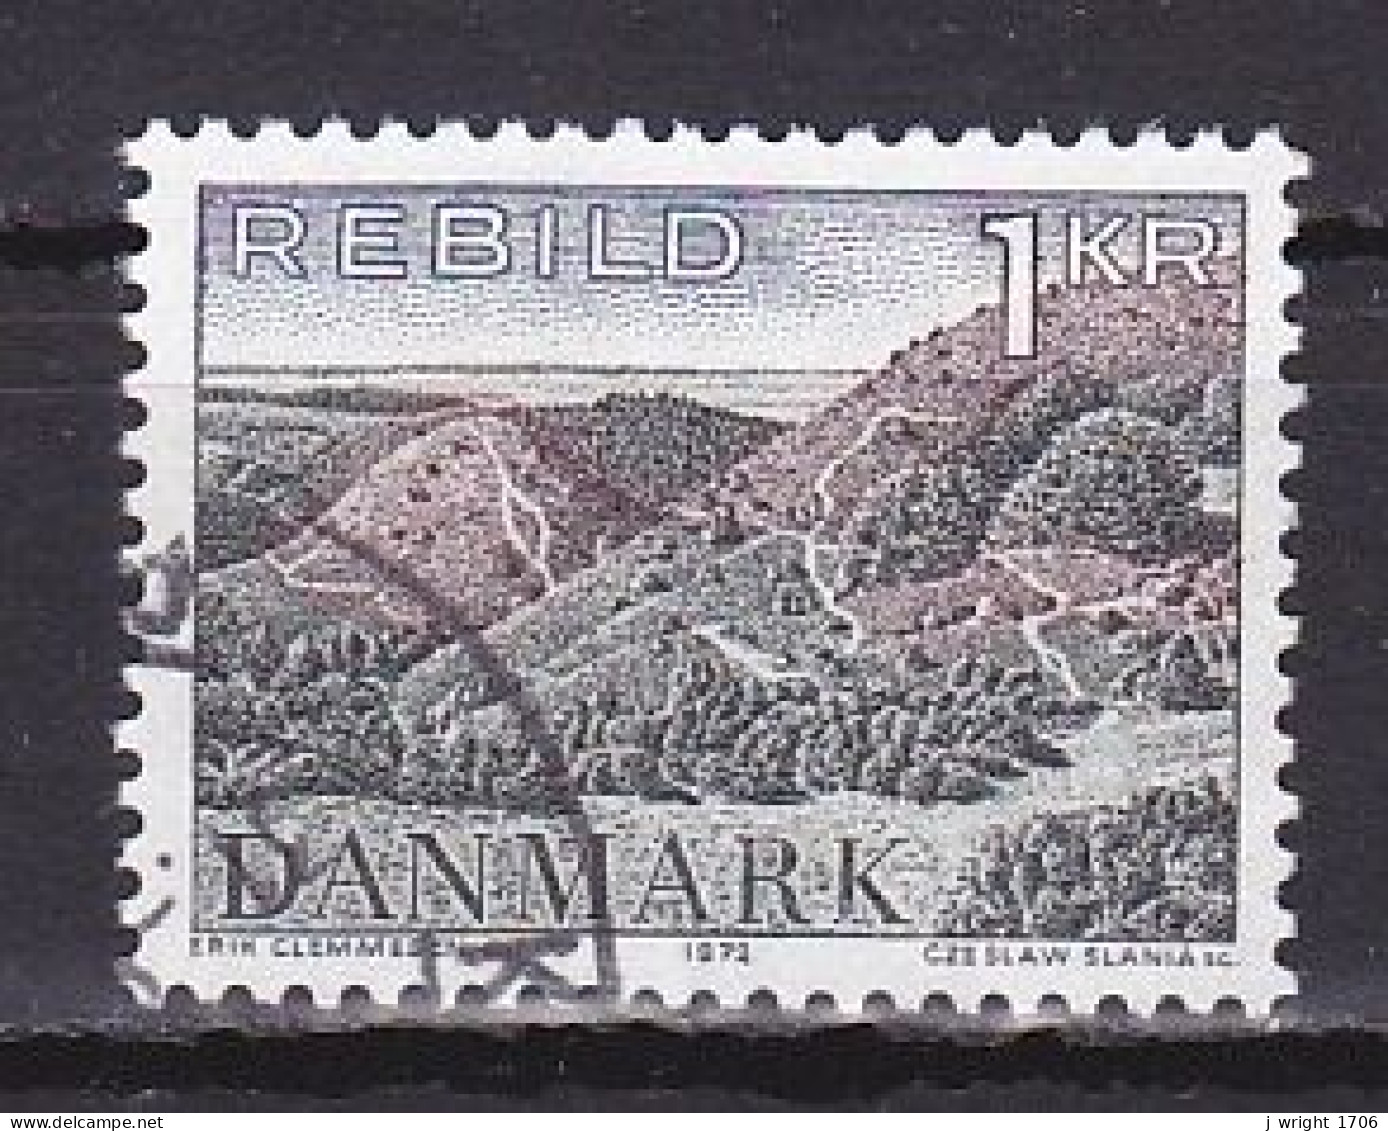 Denmark, 1972, Natural Preservation/Rebild Hills, 1kr, USED - Usado